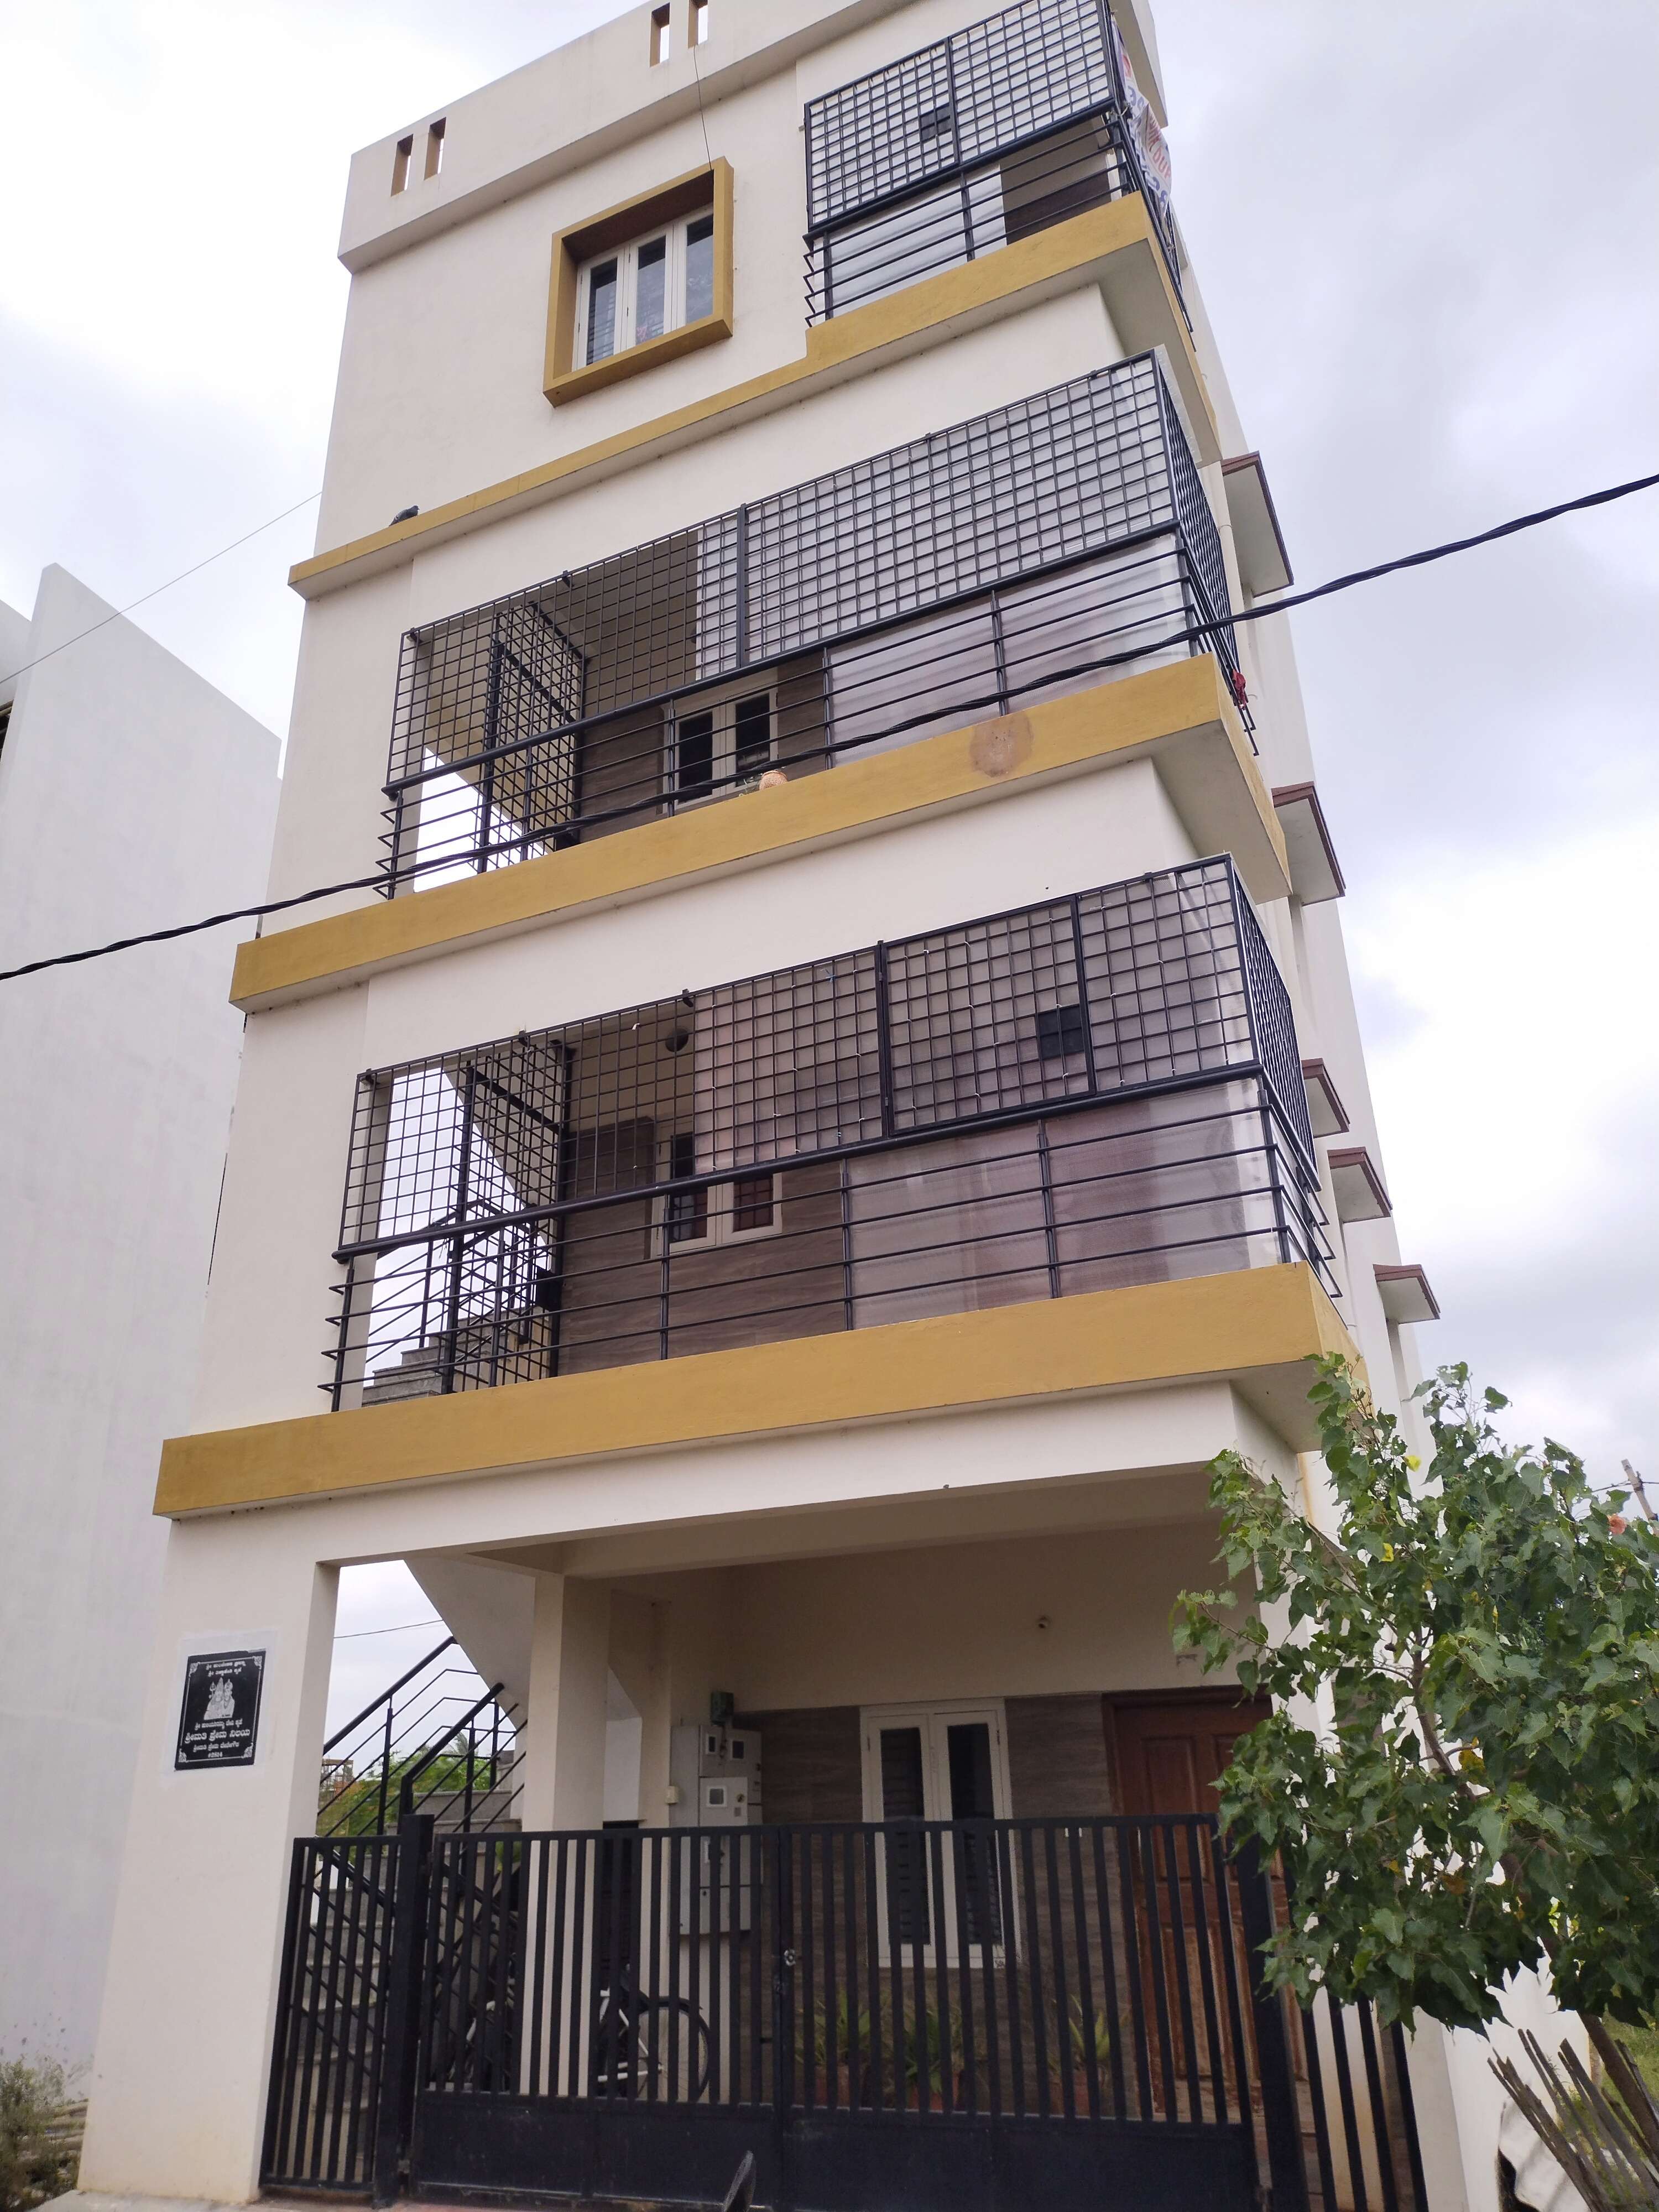 5 BHK Independent House For Resale in Vishweshwaraiah Layout Bangalore 6174997